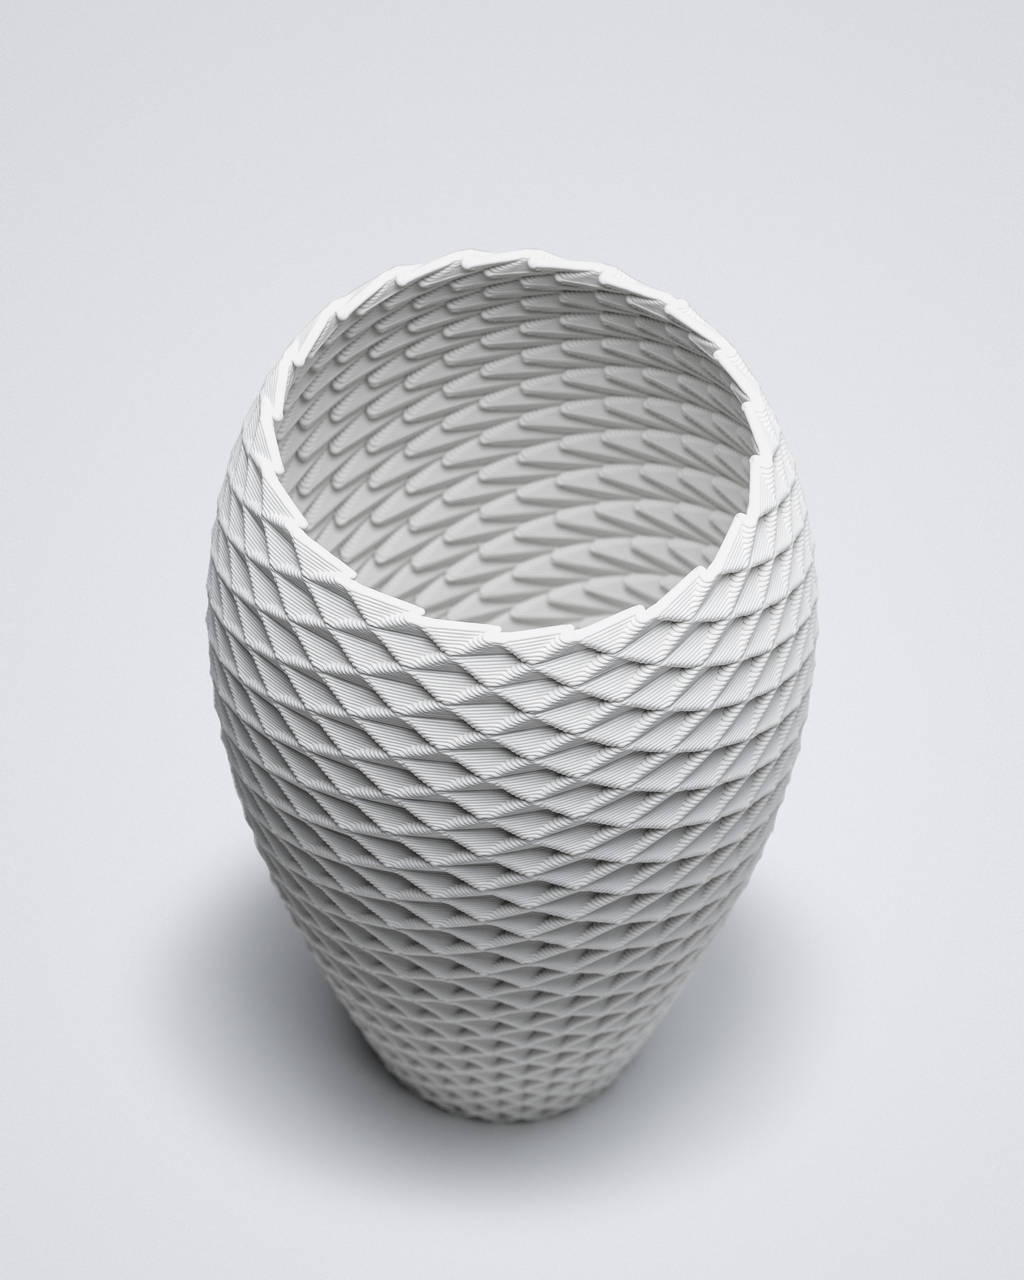 3D printed white vase